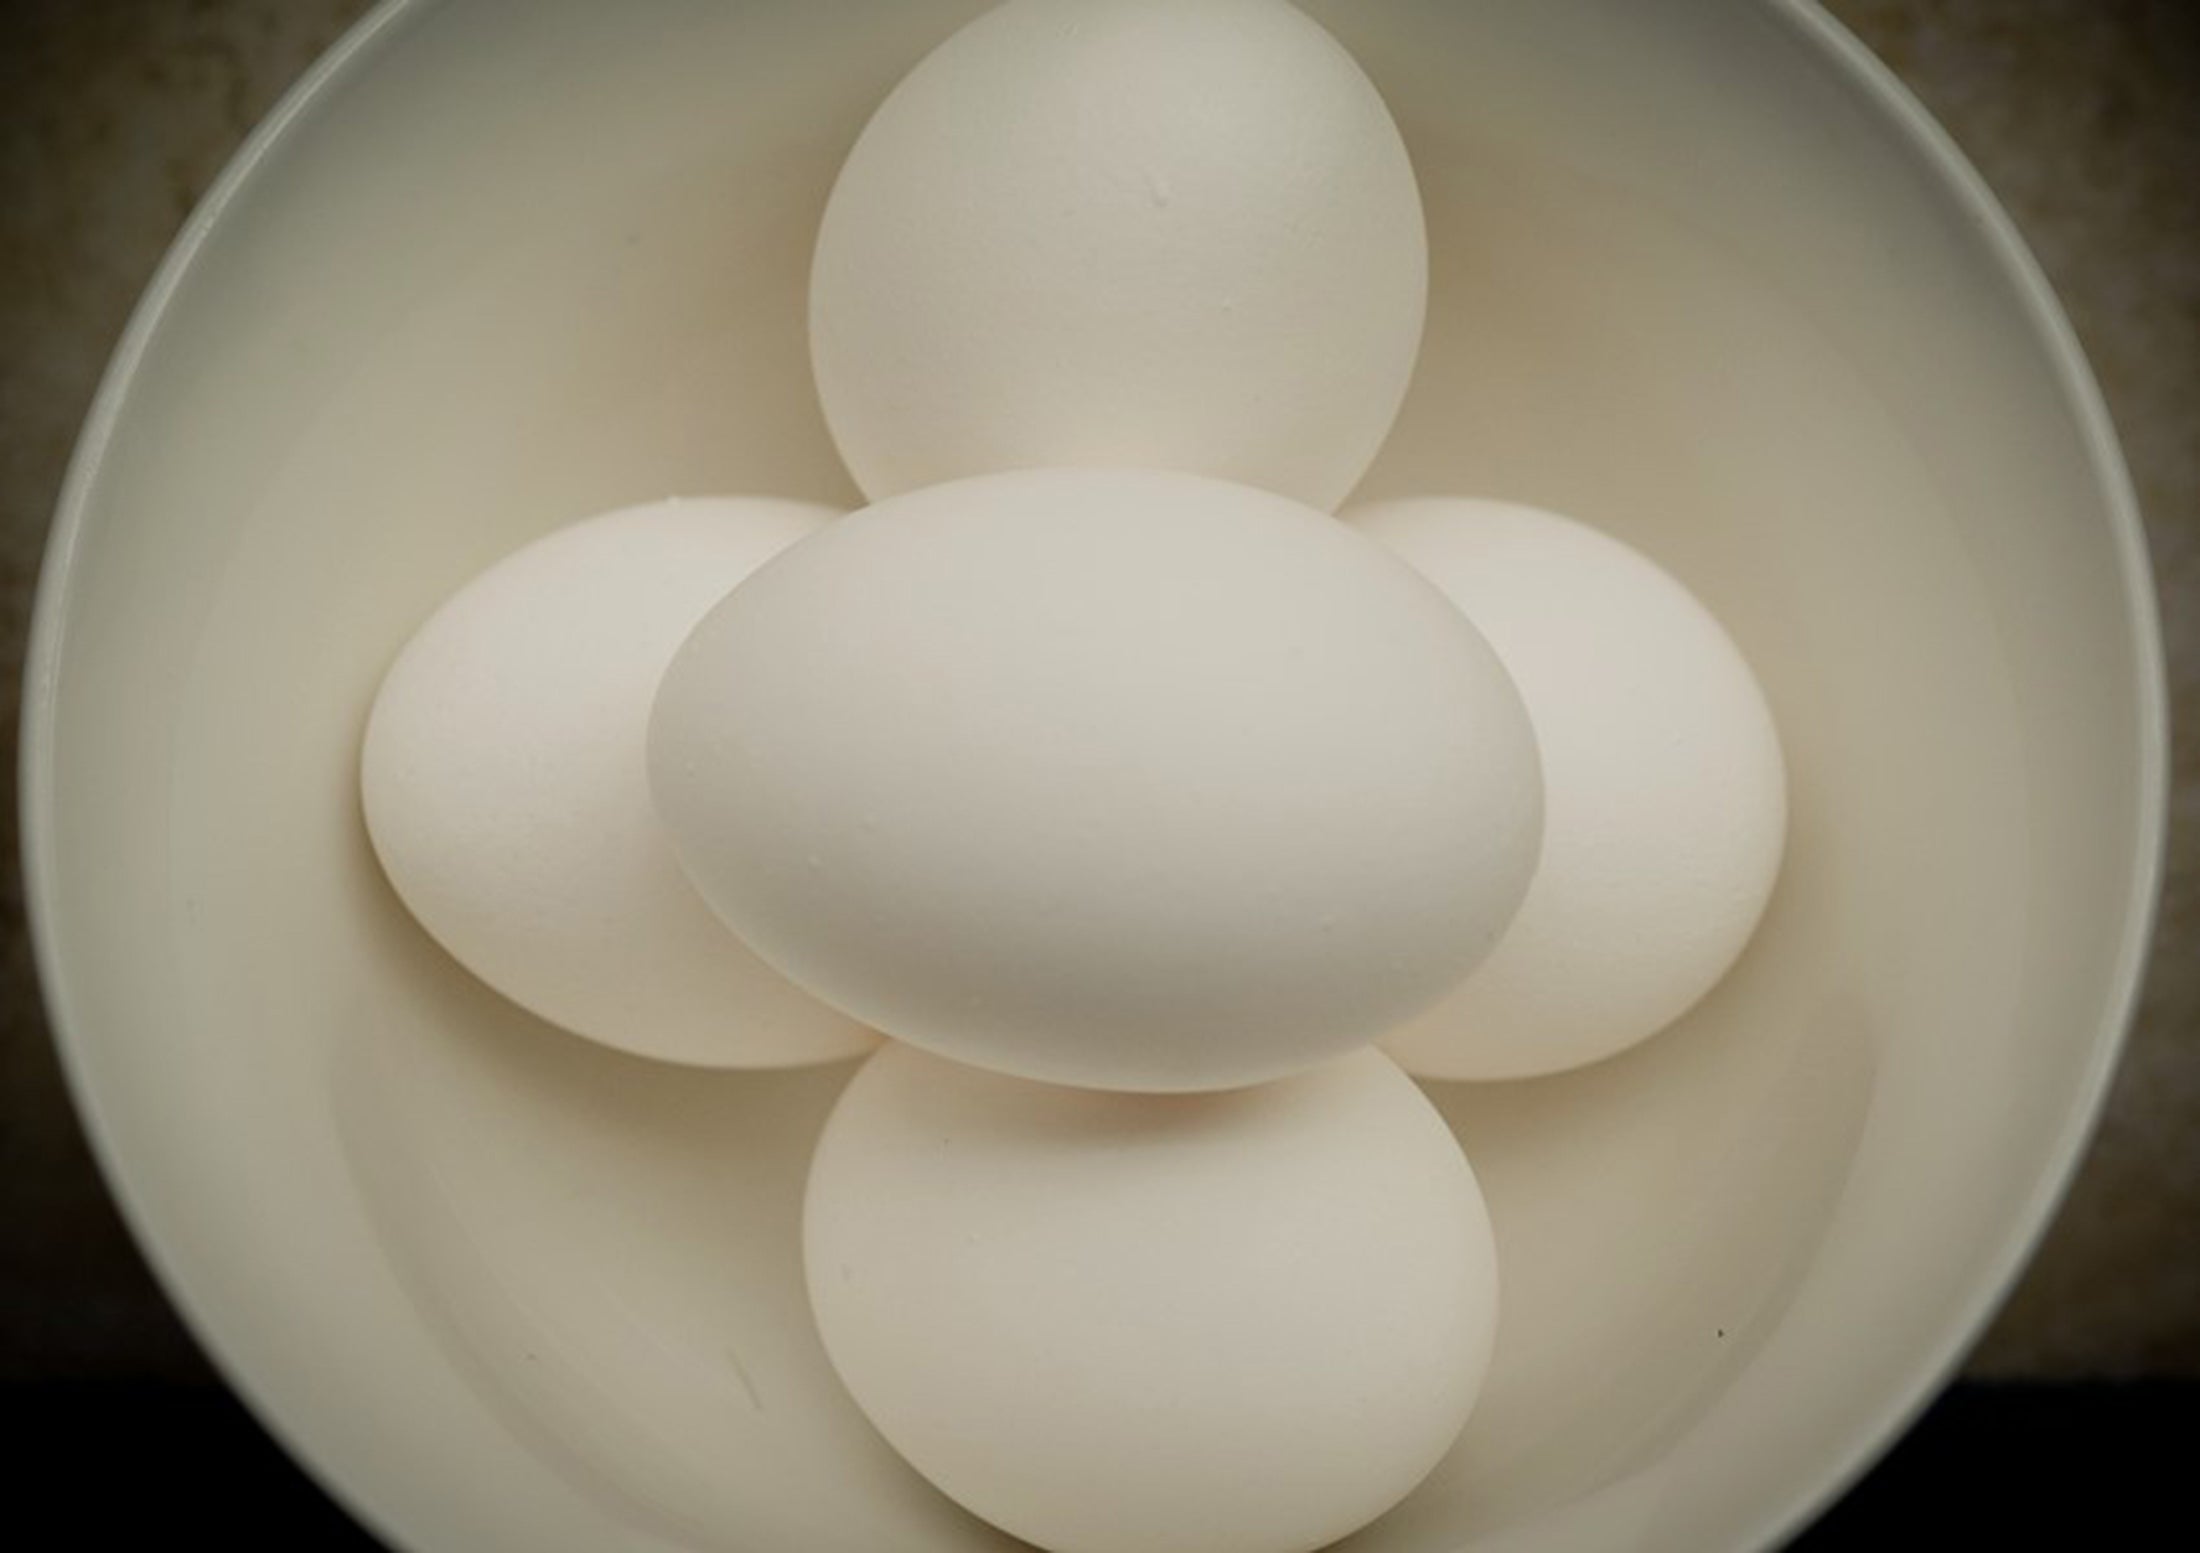 Uma pilha de ovos de cima